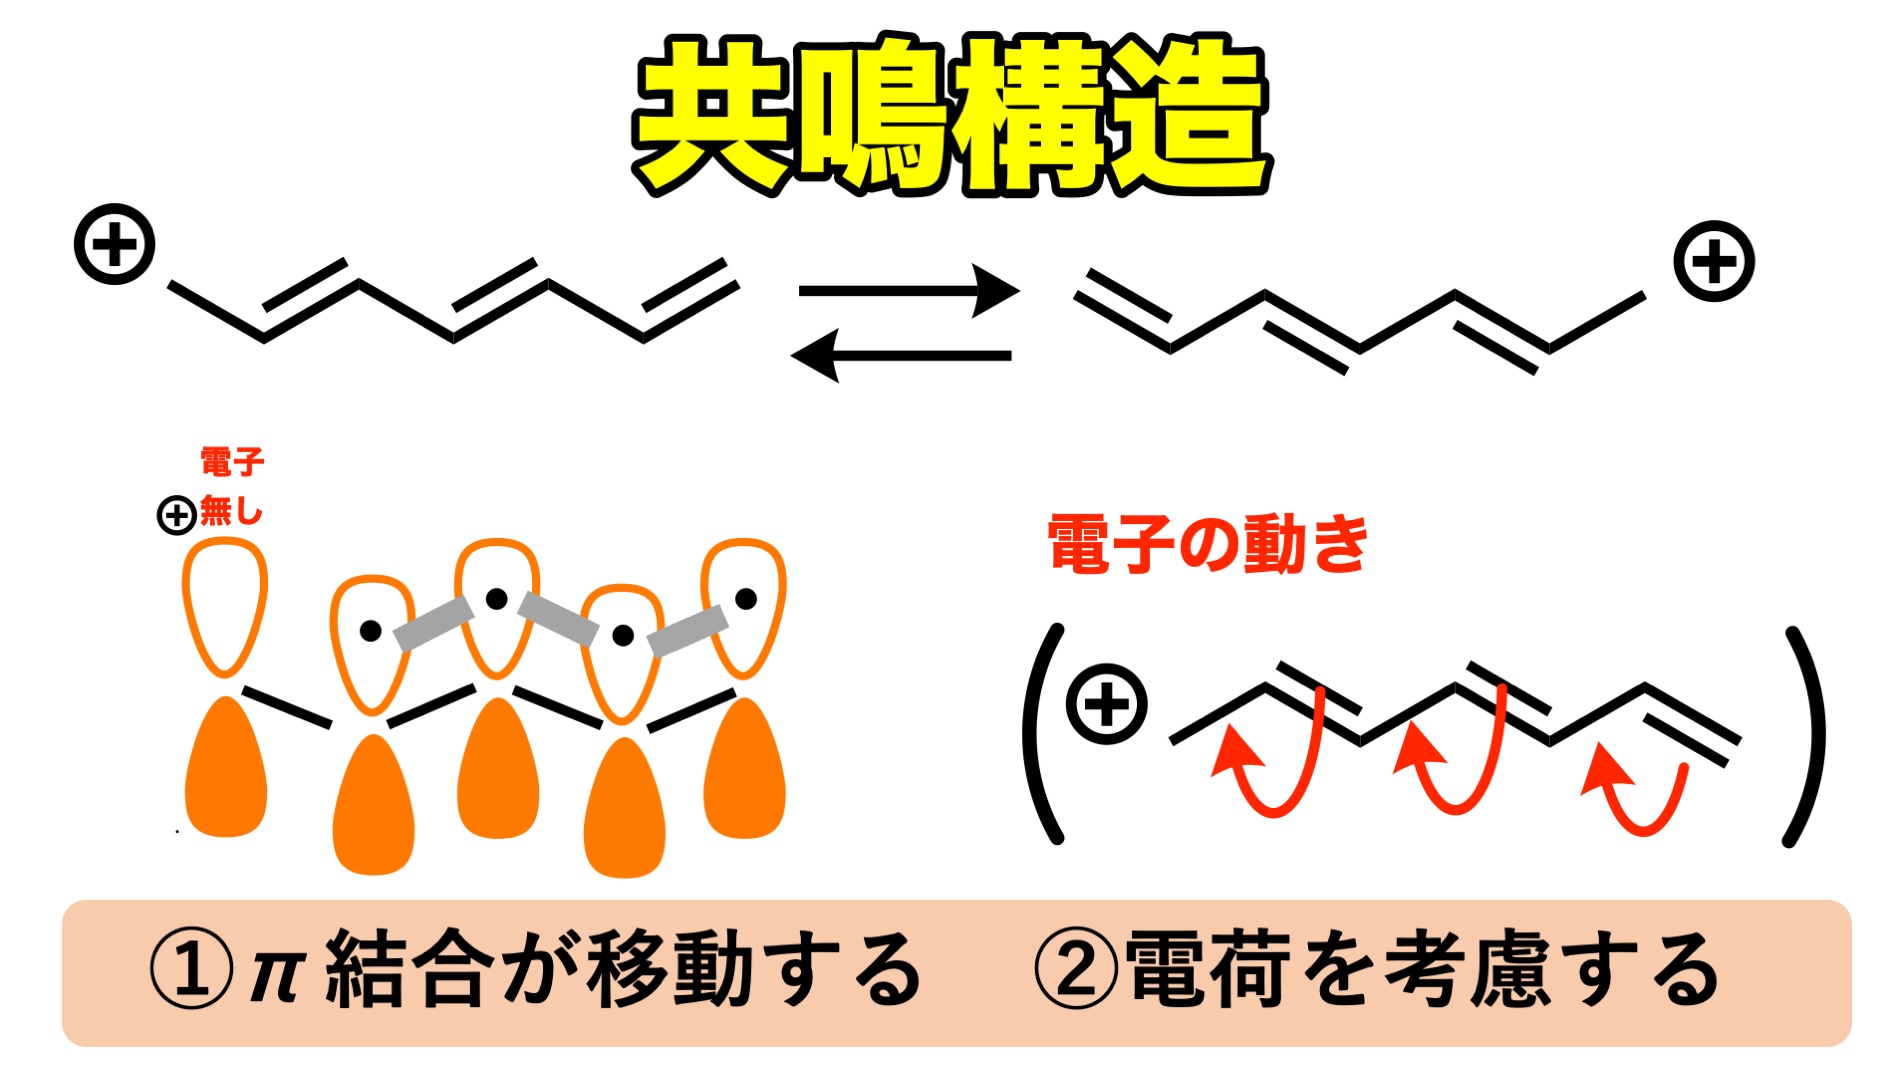 共鳴構造式とは 概念から書き方 矢印の書き方まで 化学のススメ